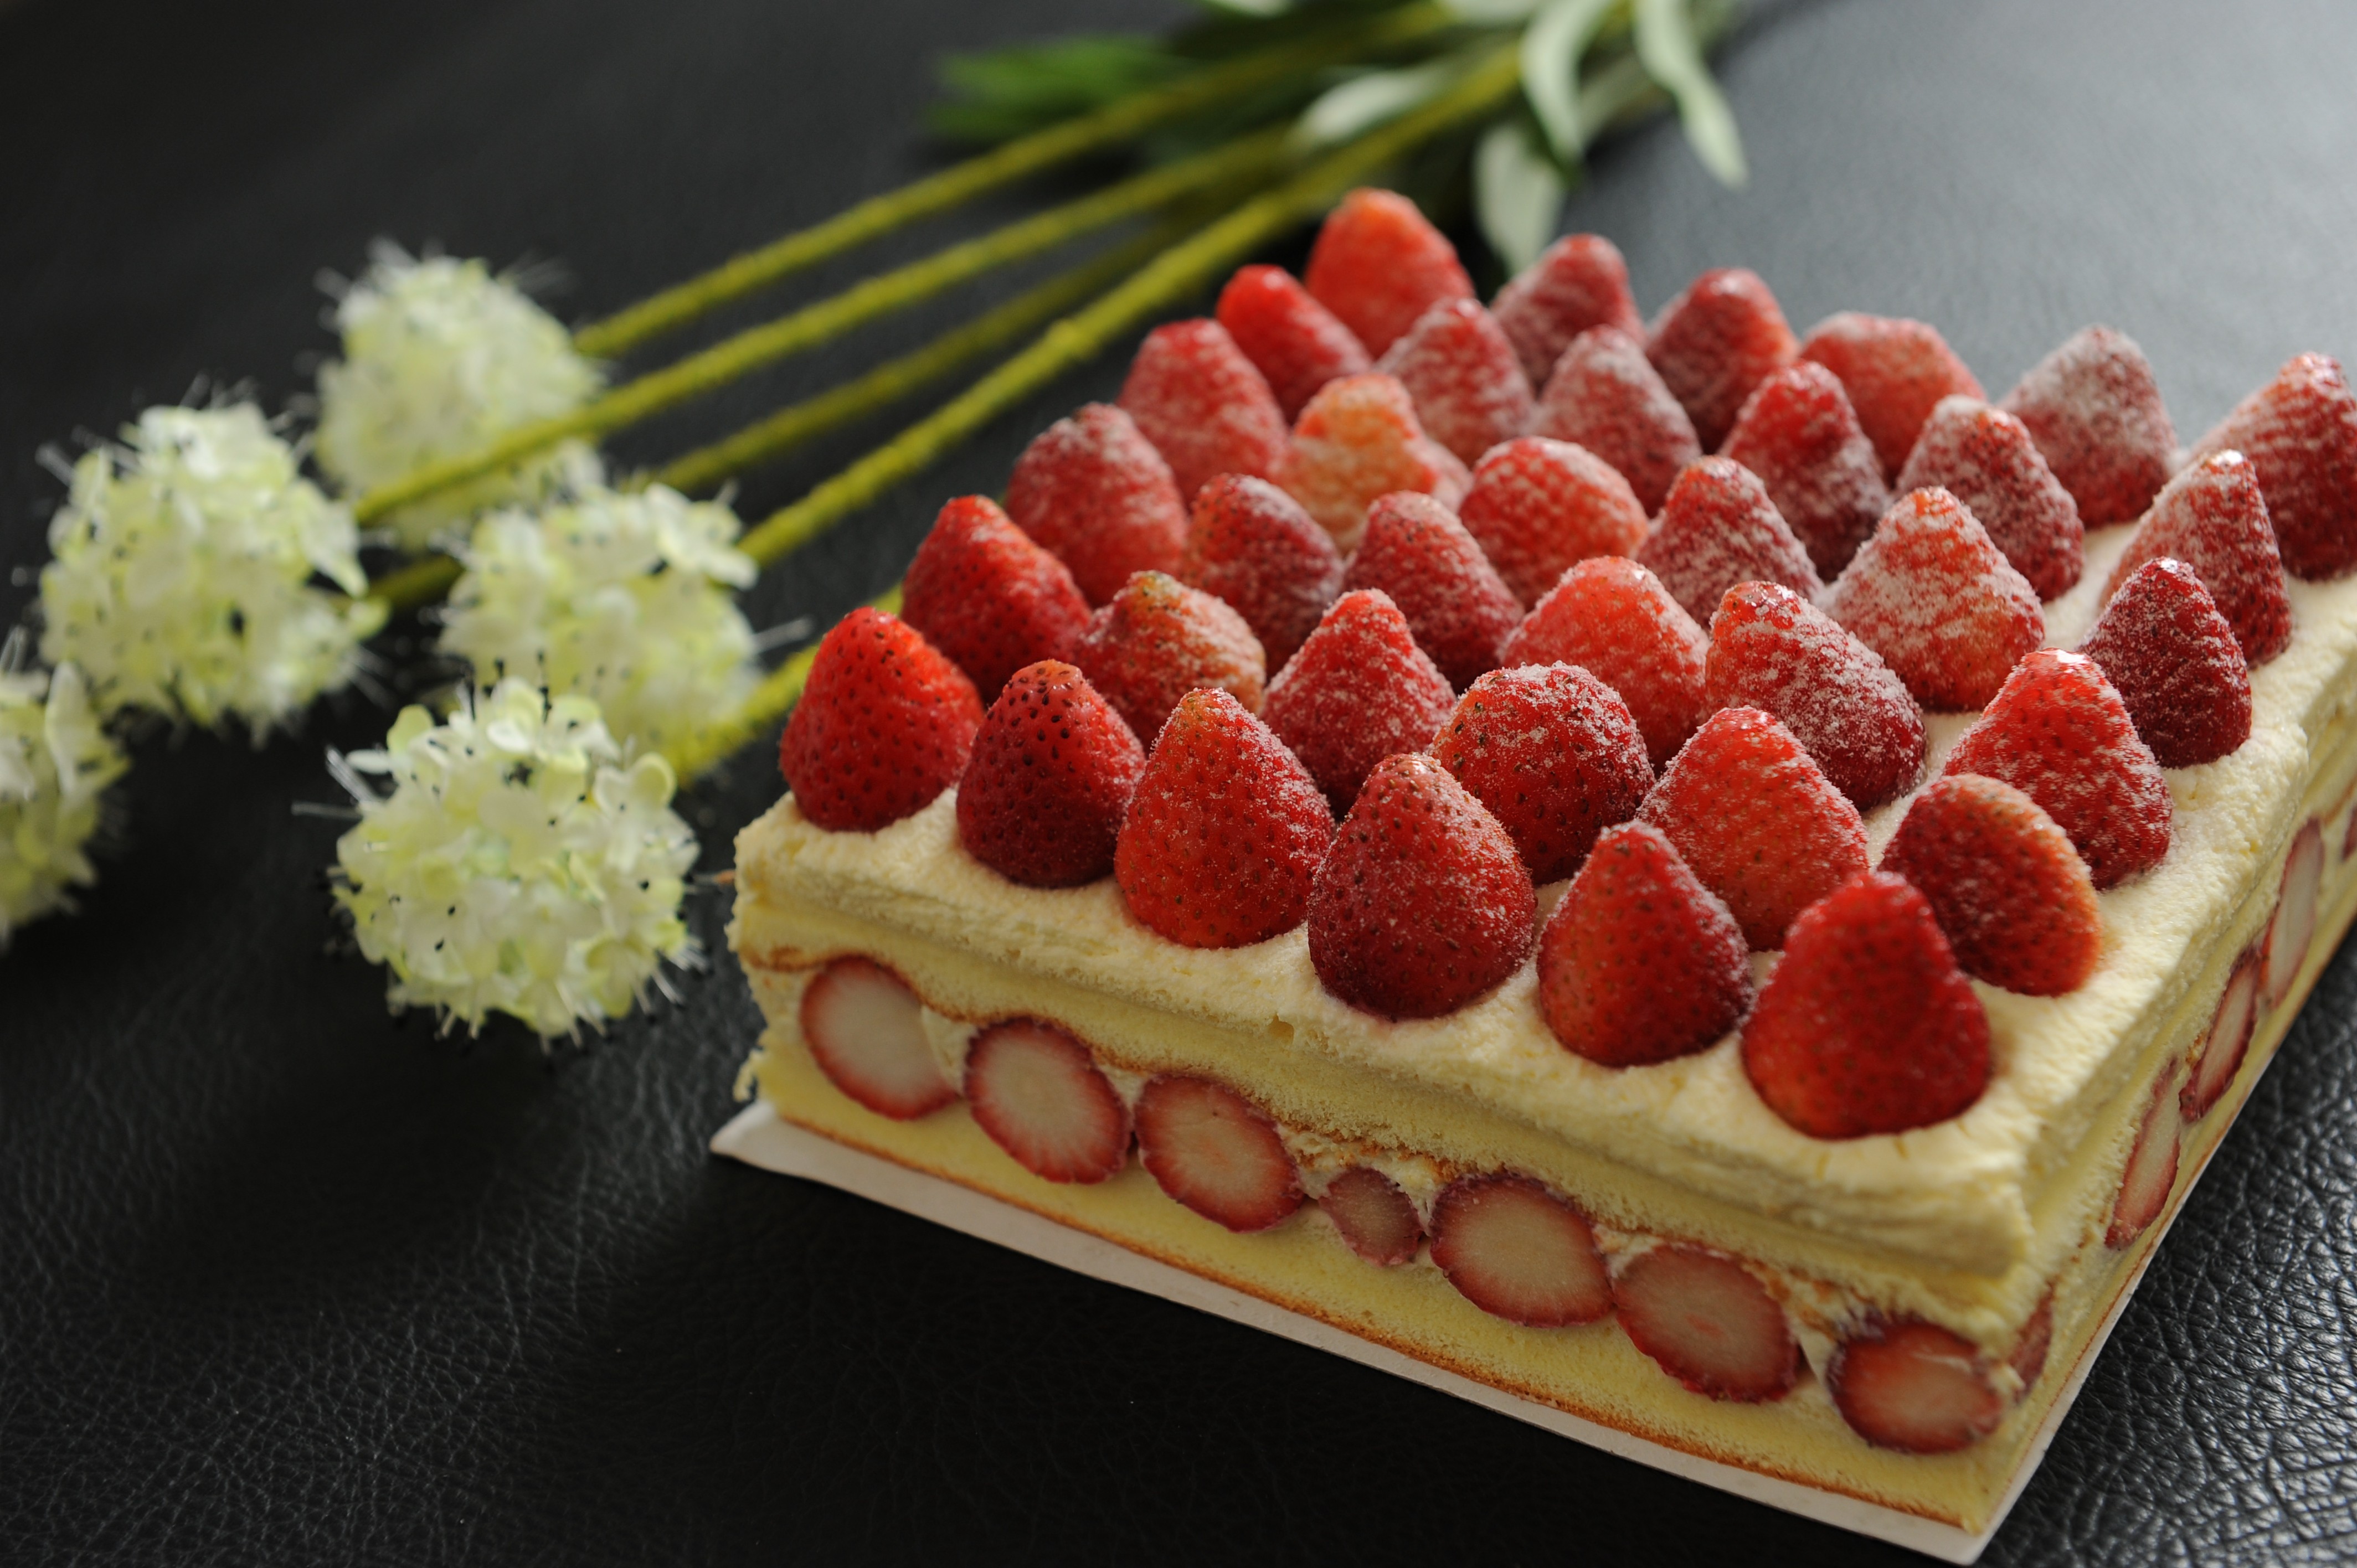 進口草莓爆多蛋糕(方型)  